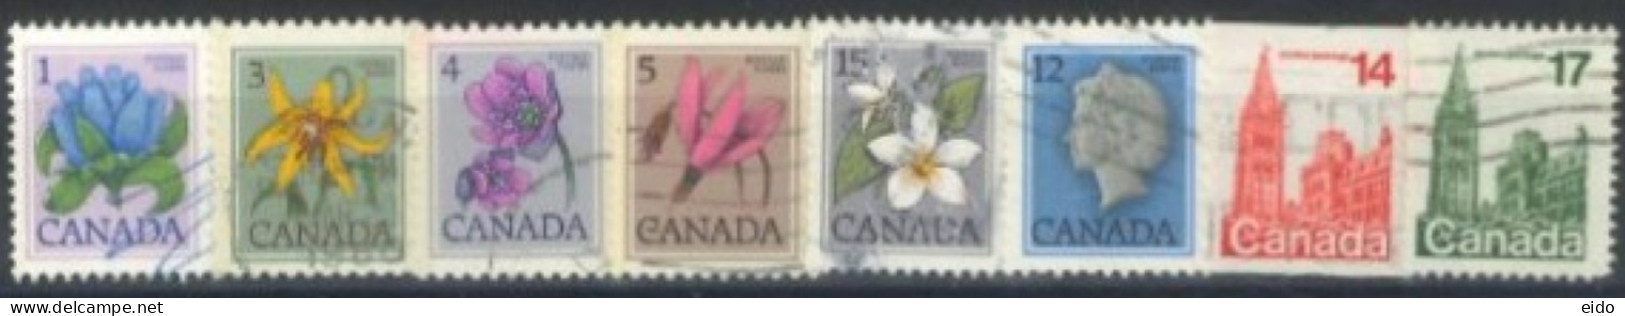 CANADA - 1977, QUEEN ELIZABETH II, HOUSE OF PARLIAMENT, FLOWERS STAMPS SET OF 8, USED. - Gebruikt